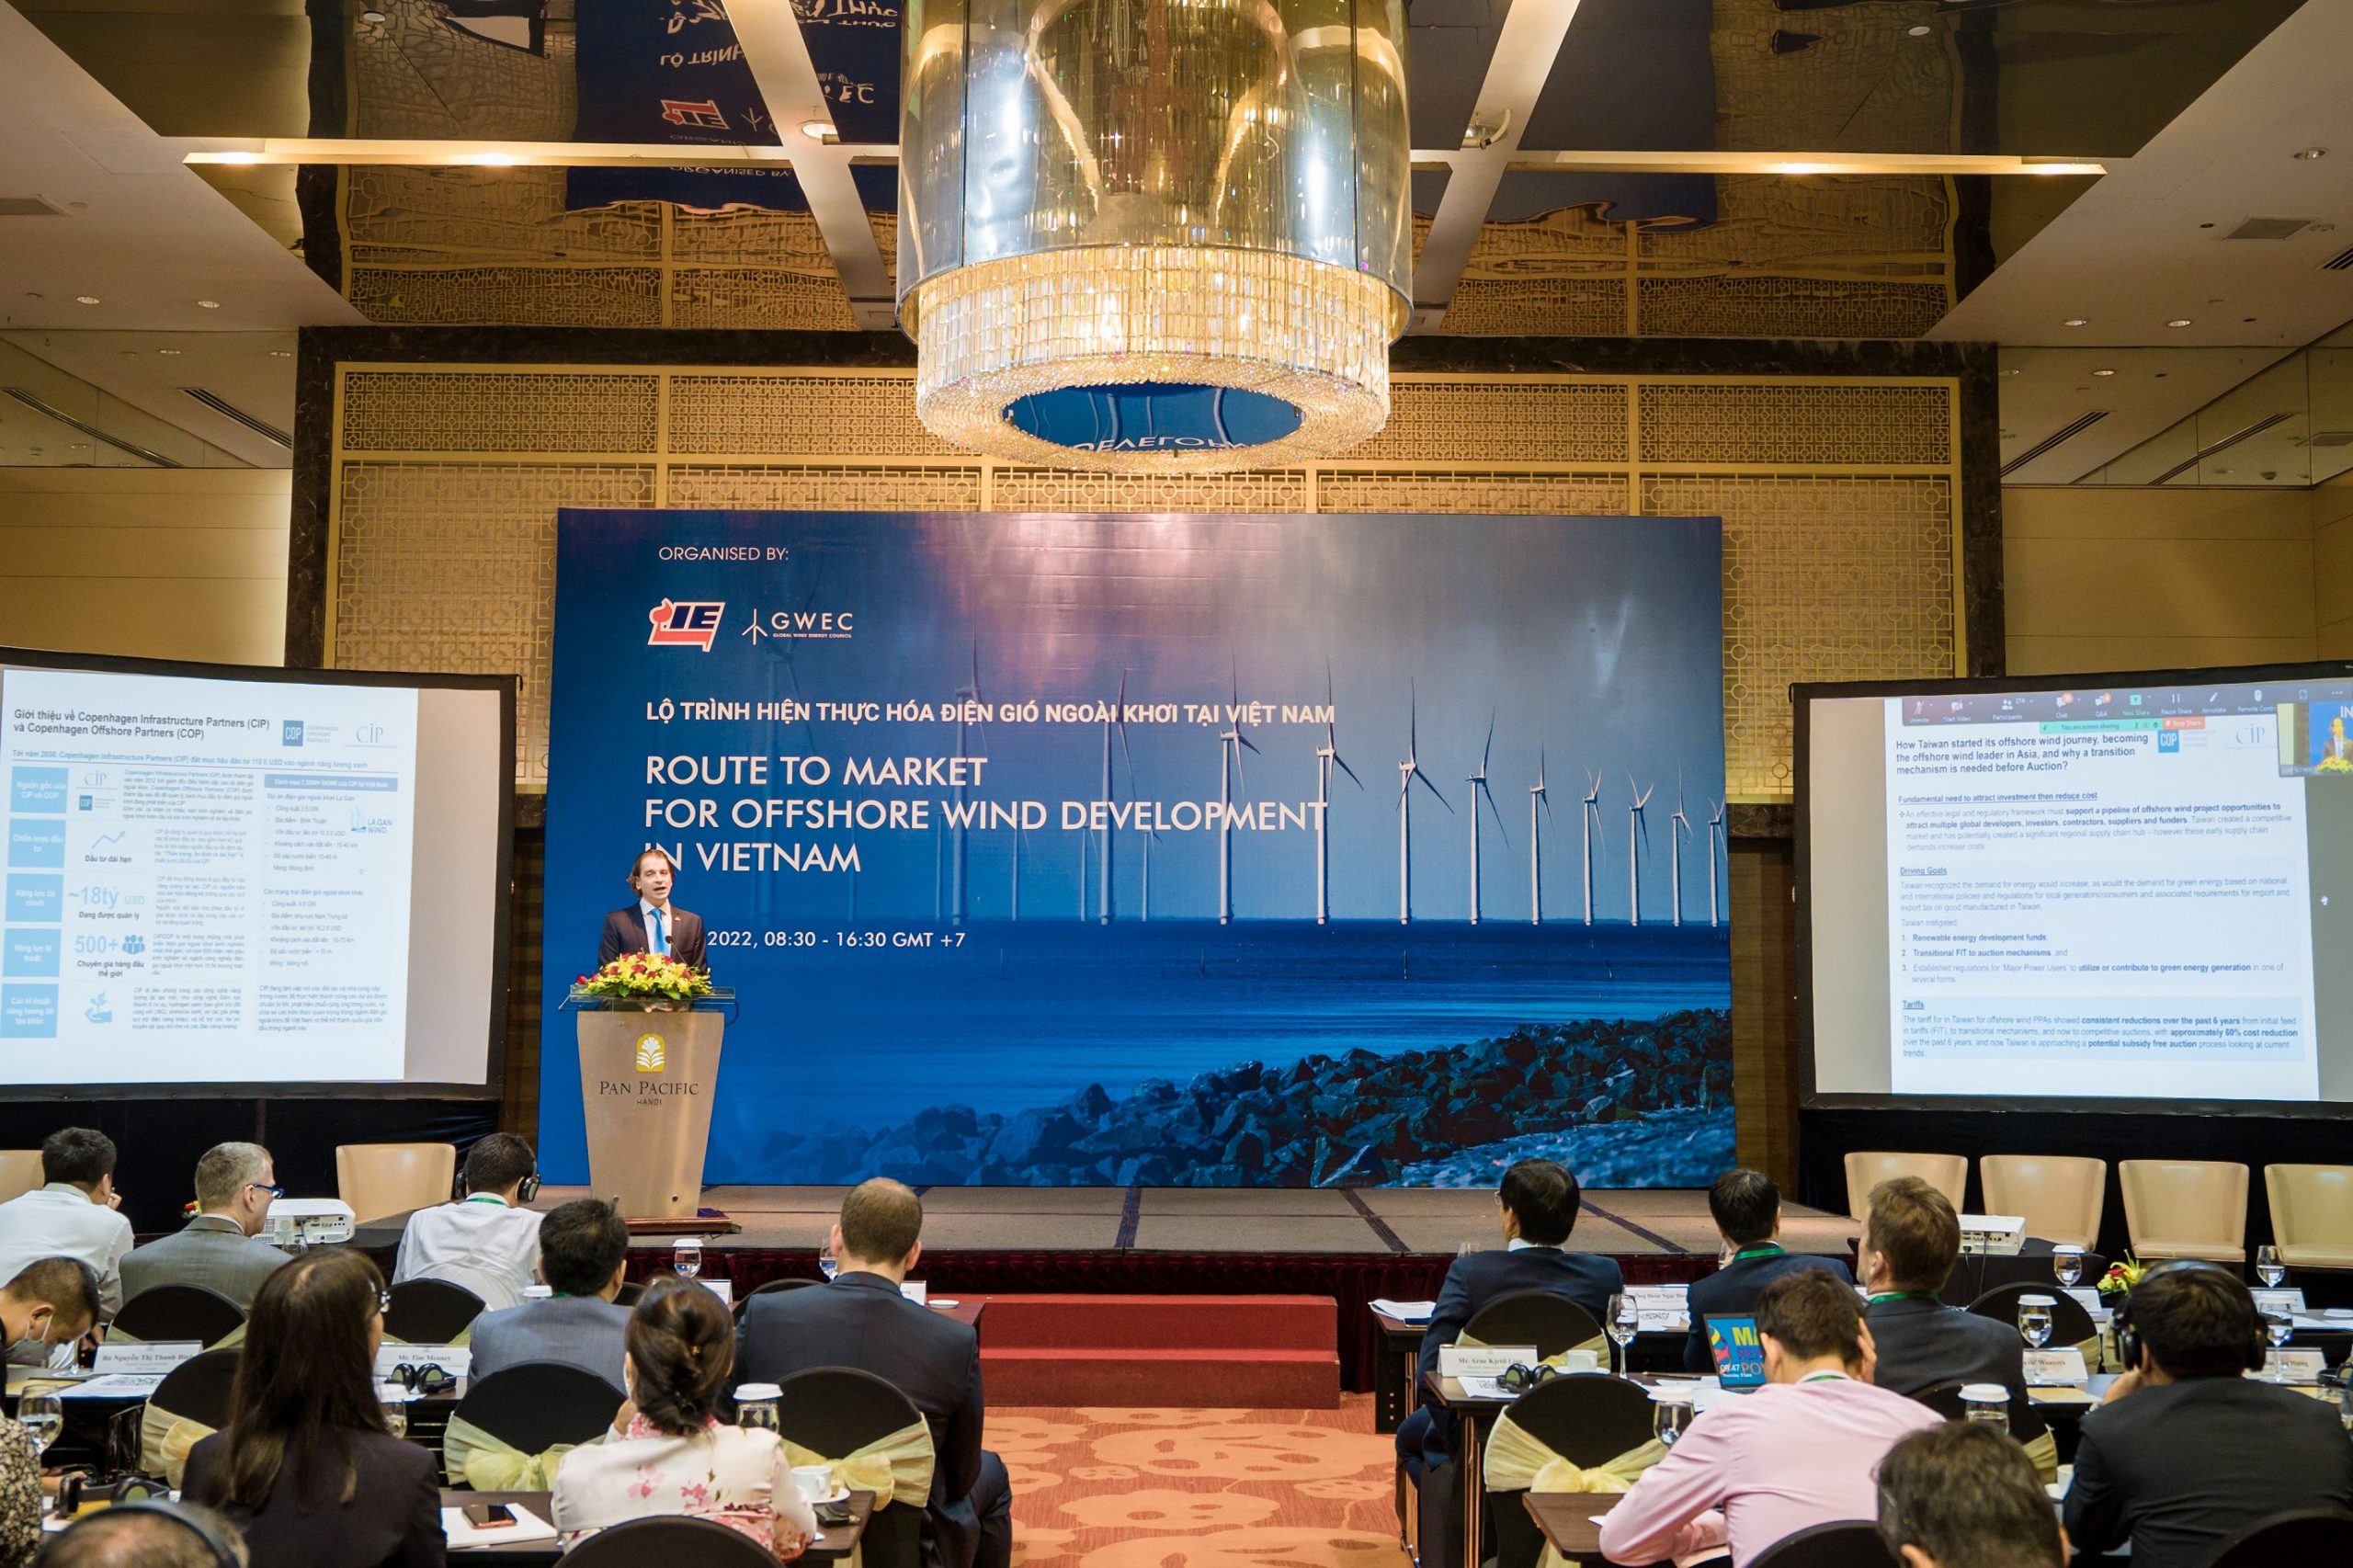 TGĐ dự án điện gió ngoài khơi La Gàn chia sẻ tại hội thảo “Lộ trình hiện thực hóa điện gió ngoài khơi tại Việt Nam”